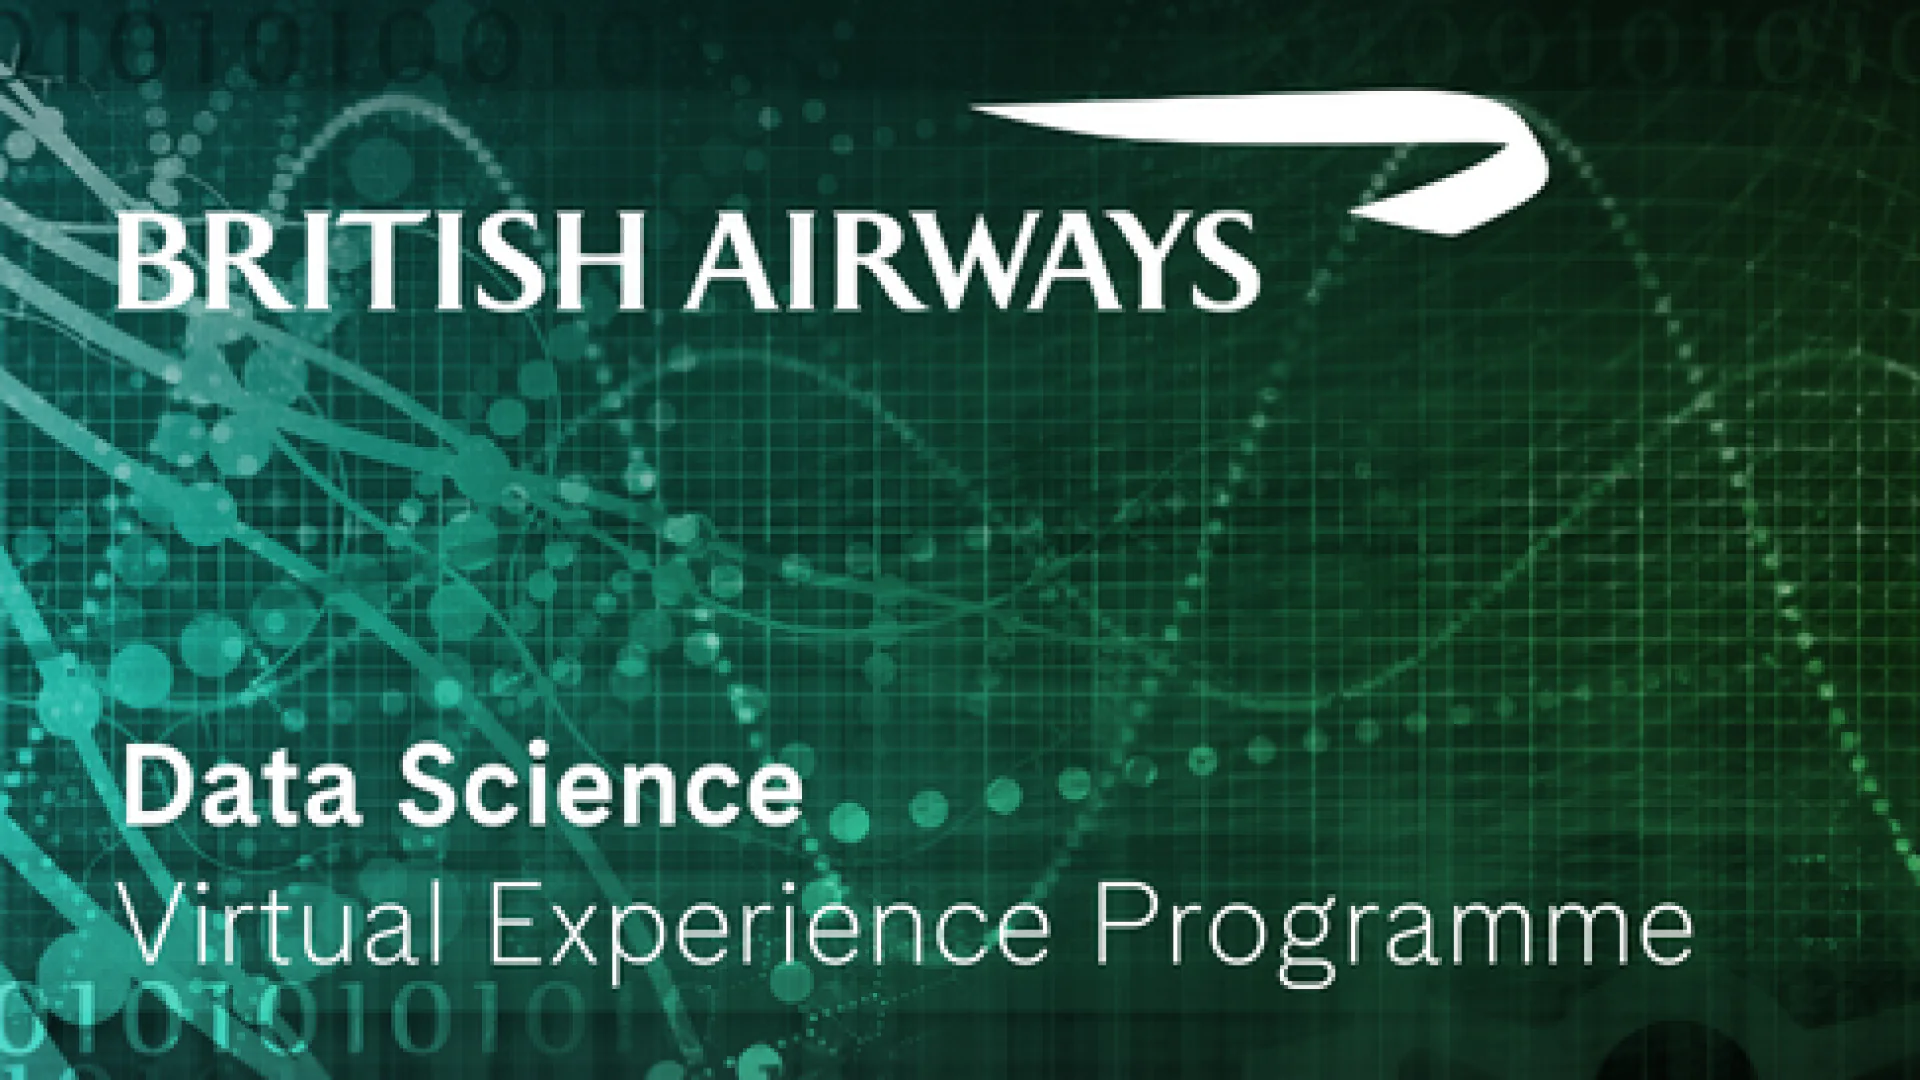 British Airwaysda onlayn amaliyot oʻtash va ishlash imkonini beruvchi Data Science Virtual Experience Programme dasturi